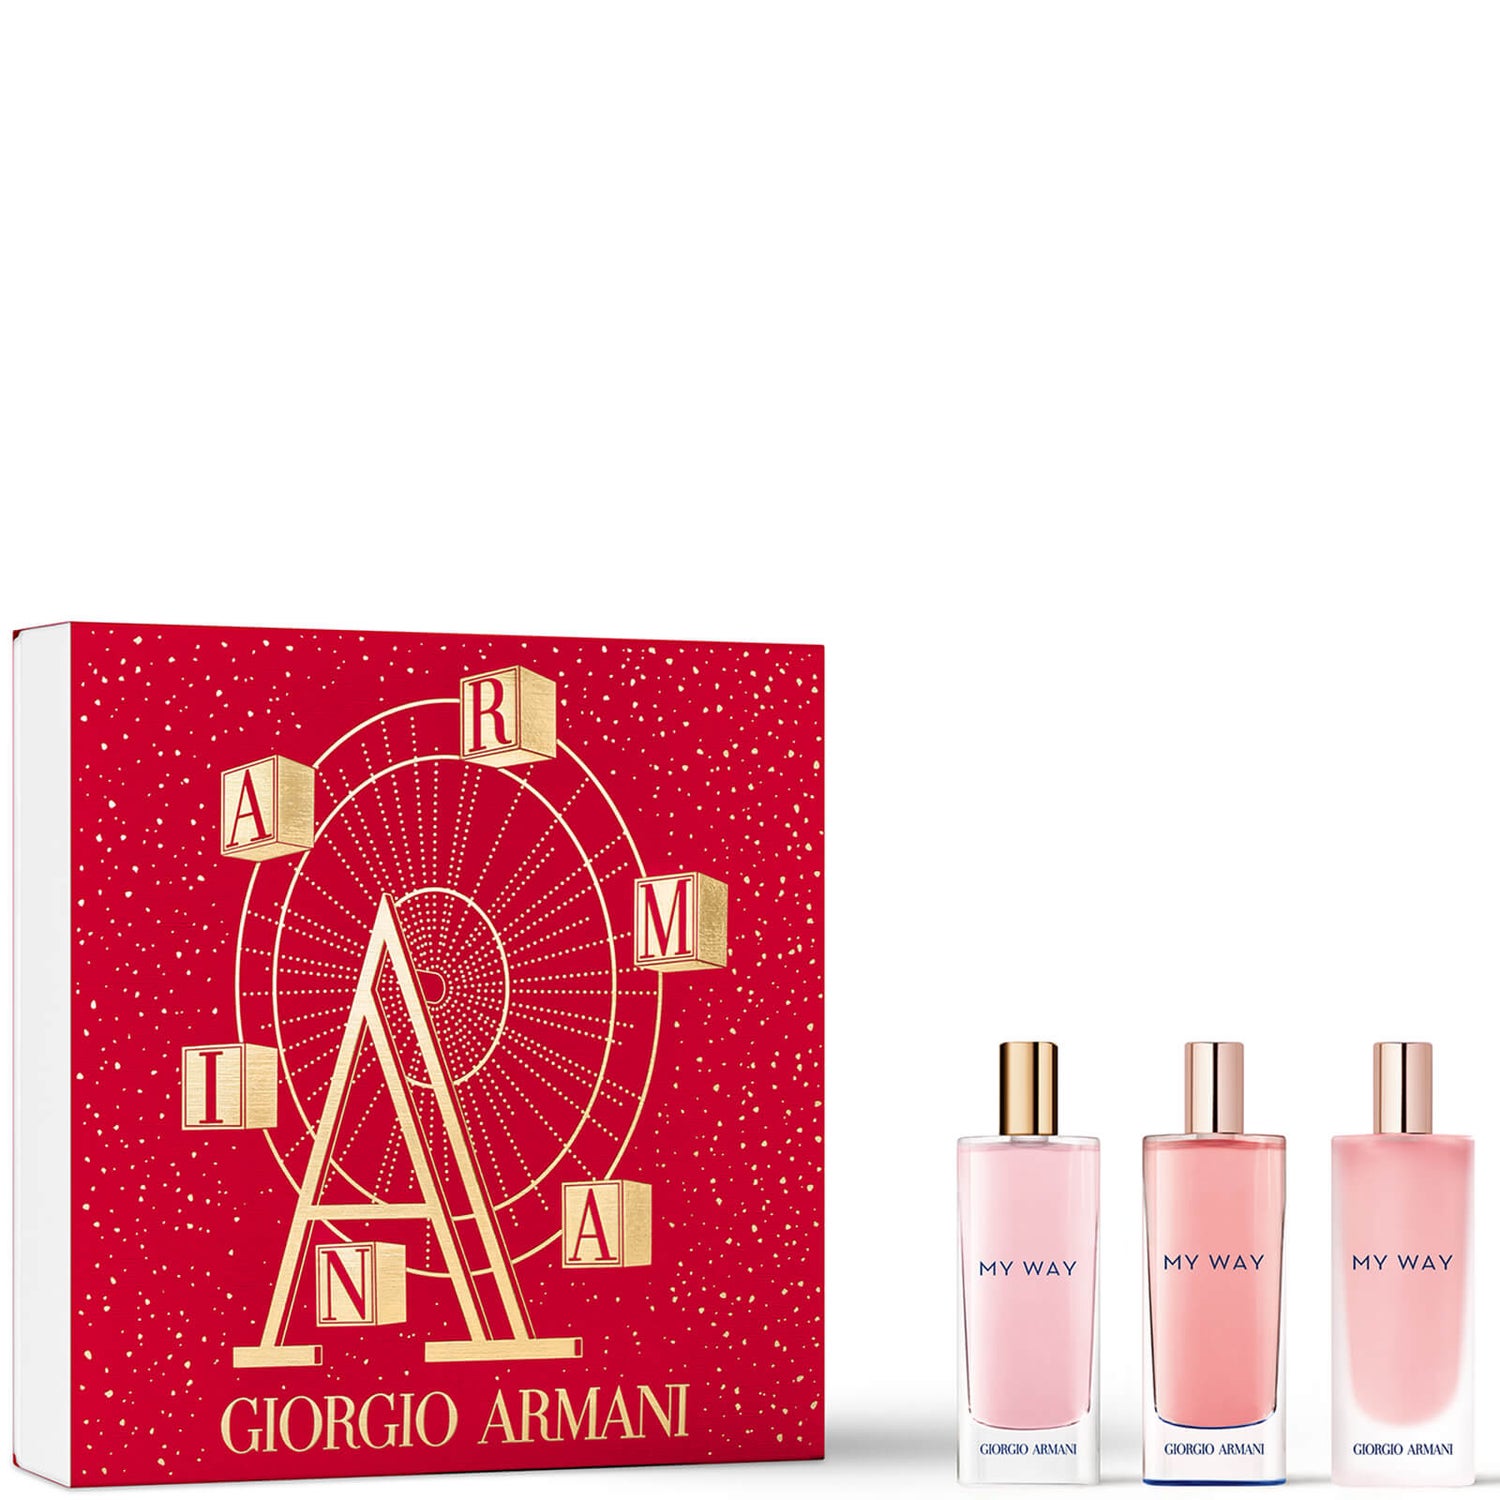 Armani My Way Eau De Parfum Mini Gift Set for Her woda perfumowana – zestaw prezentowy dla niej